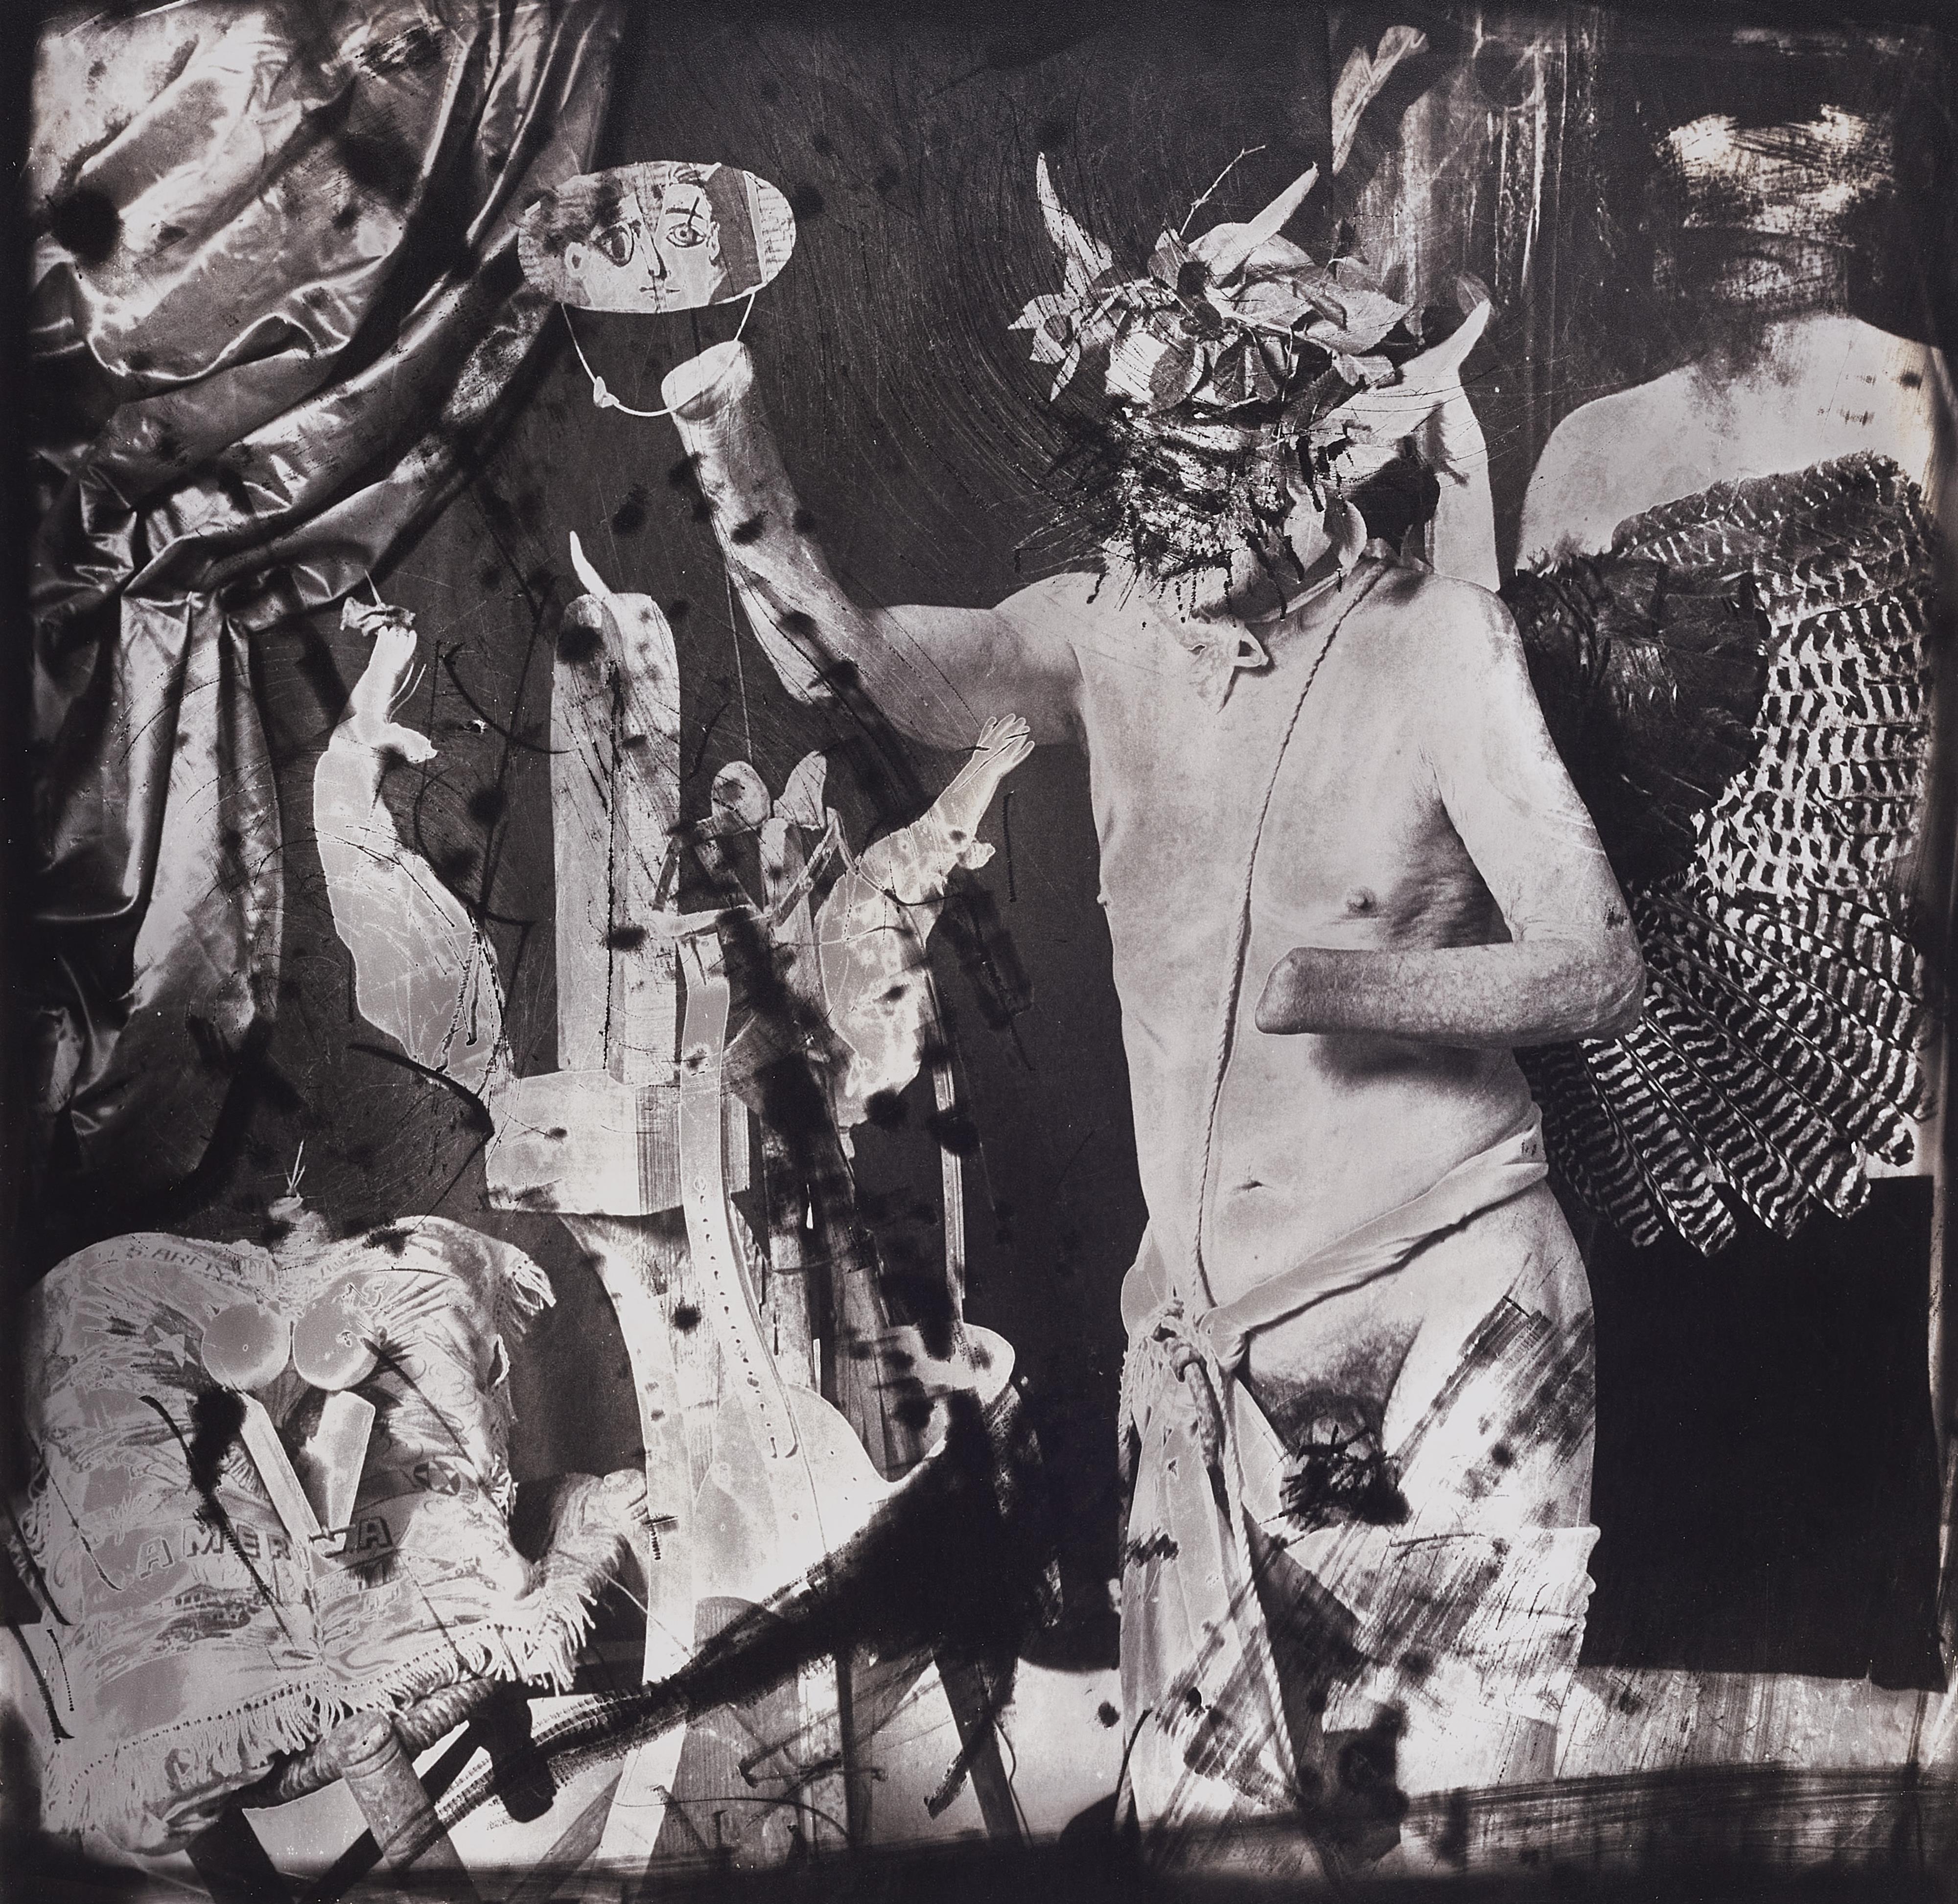 Joel-Peter Witkin - Picasso en los Disparates de Goya, New Mexico - image-1